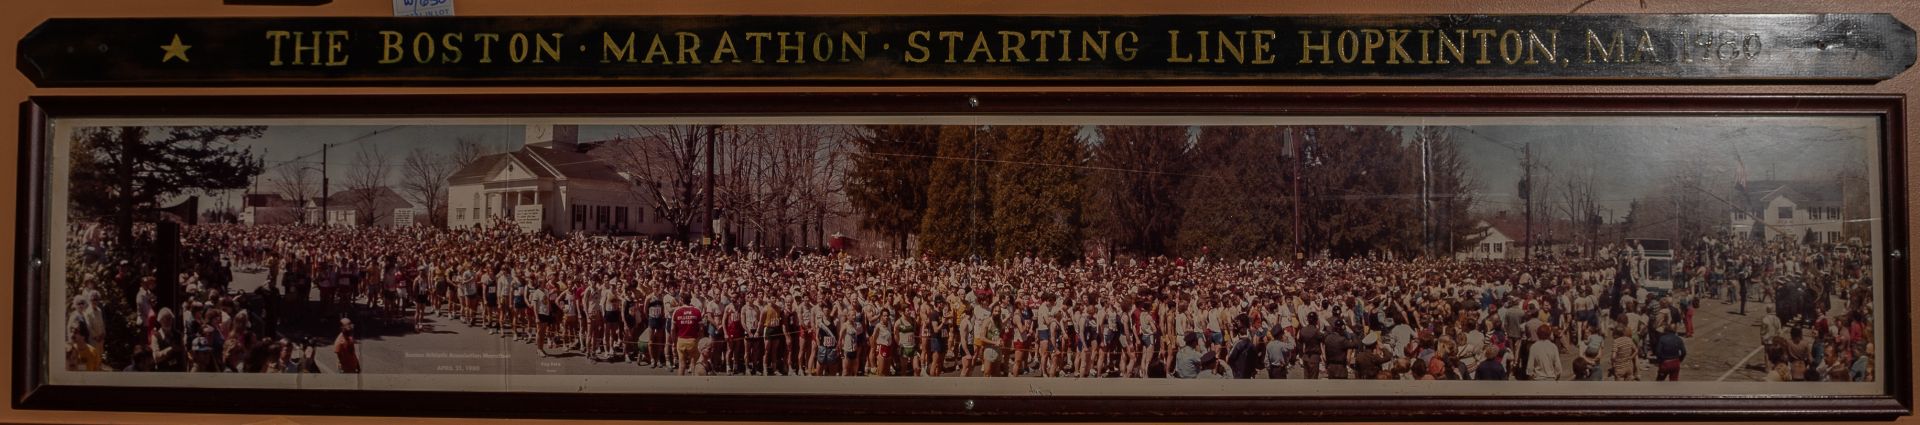 1980 Boston Marathon Start Line Framed Photo w/ Plaque 72"x12"